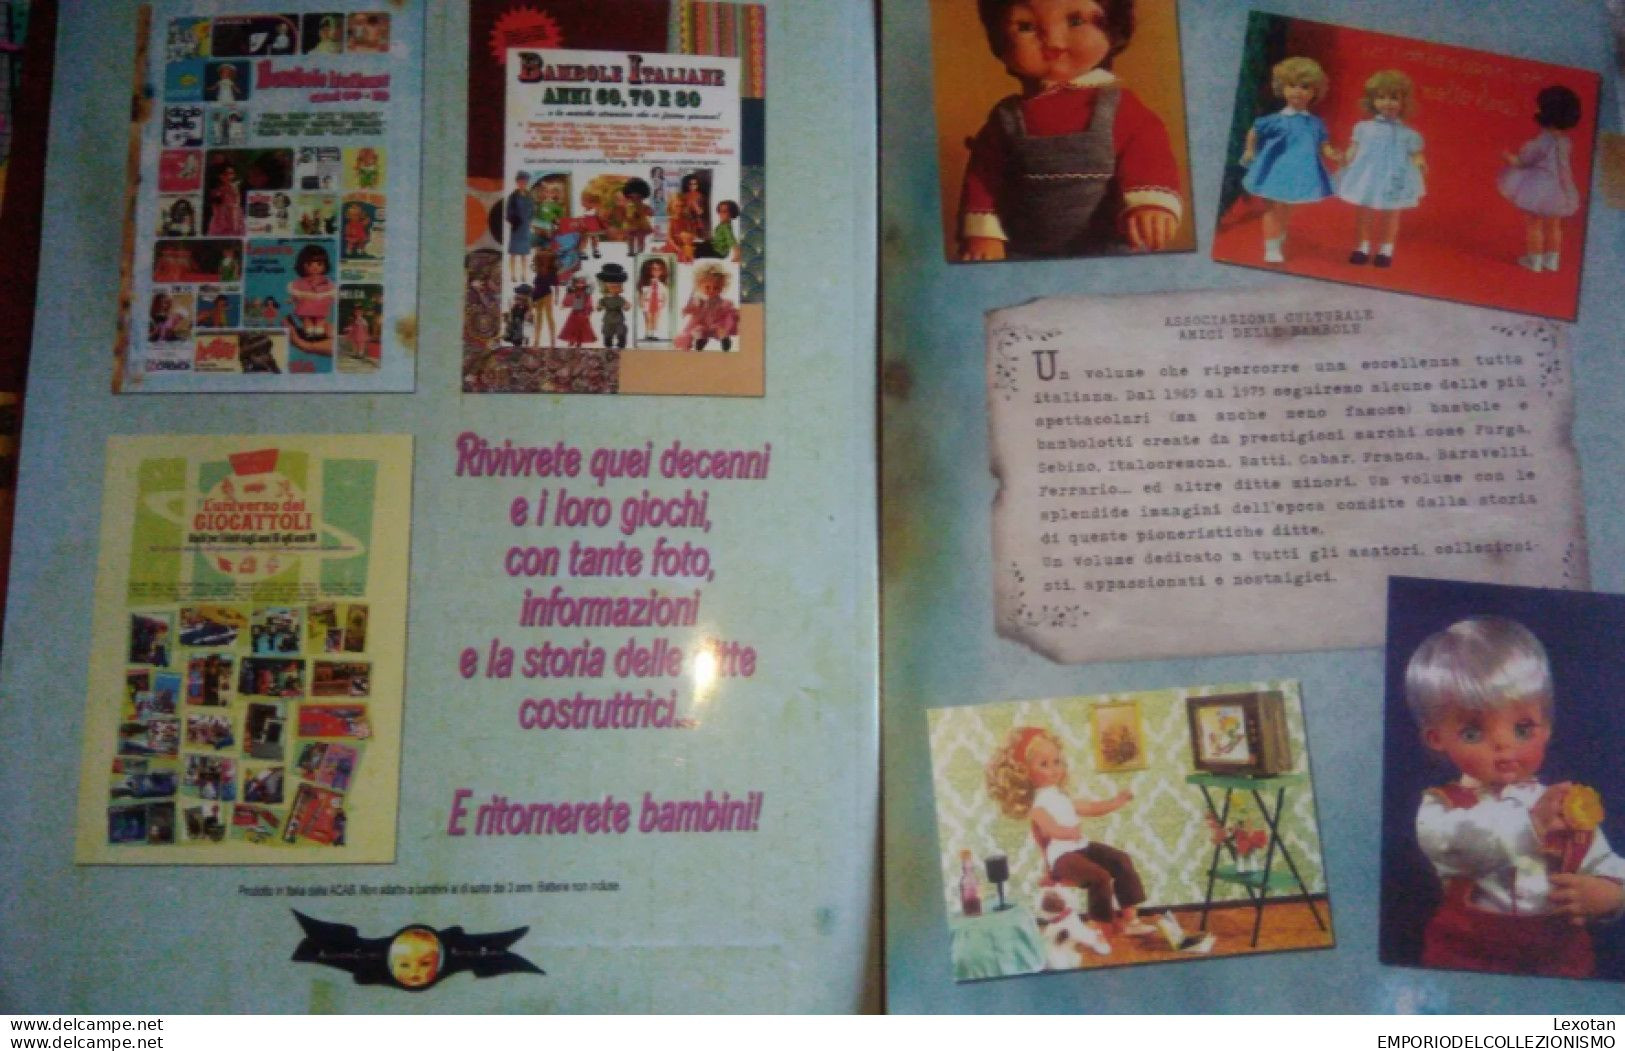 3 libri Catalogo Bambole Furga Migliorati Sebino Ratti Baravelli Franca Ferrario mattel Italocremona barbie 60 70 80 90